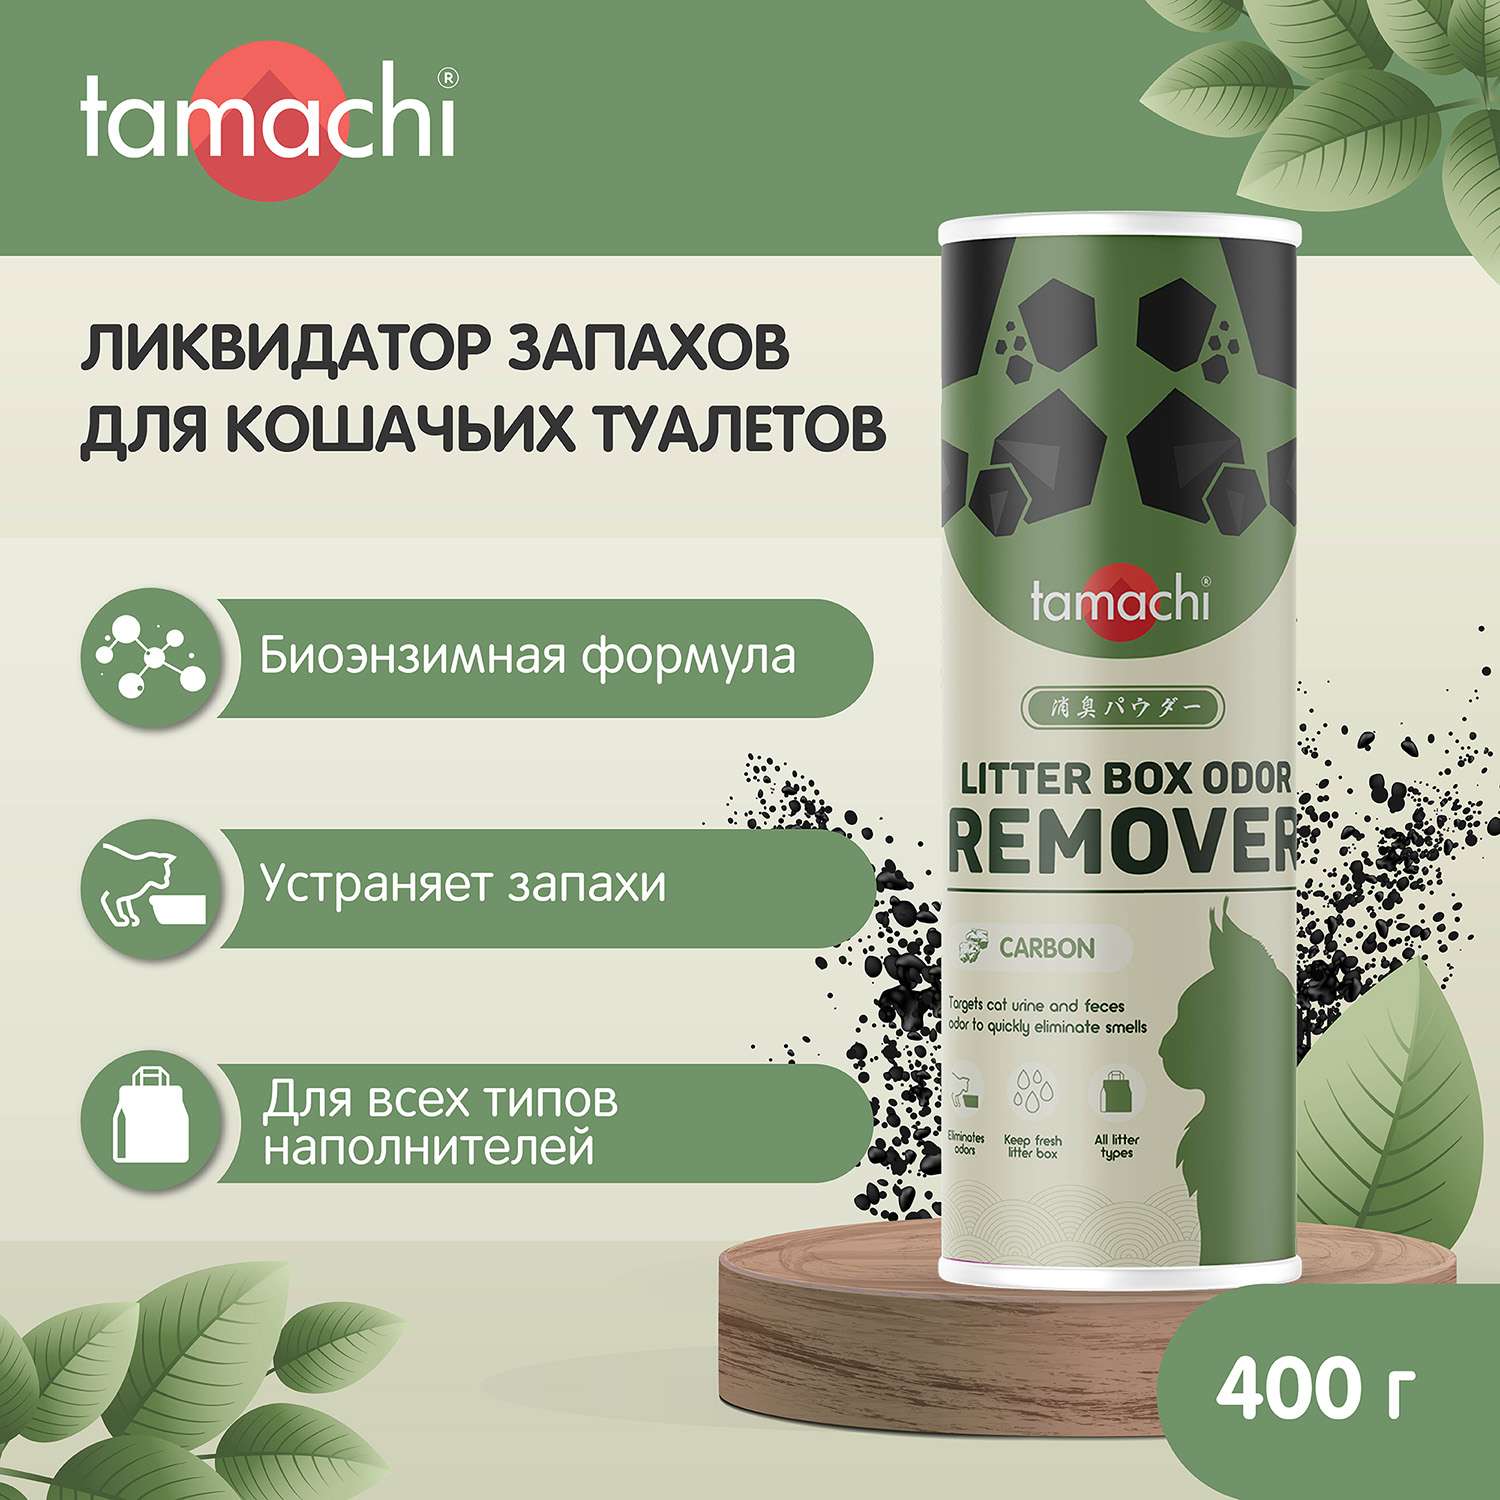 Порошок для кошек Tamachi ликвидатор запаха для кошачьих туалетов 400г - фото 2